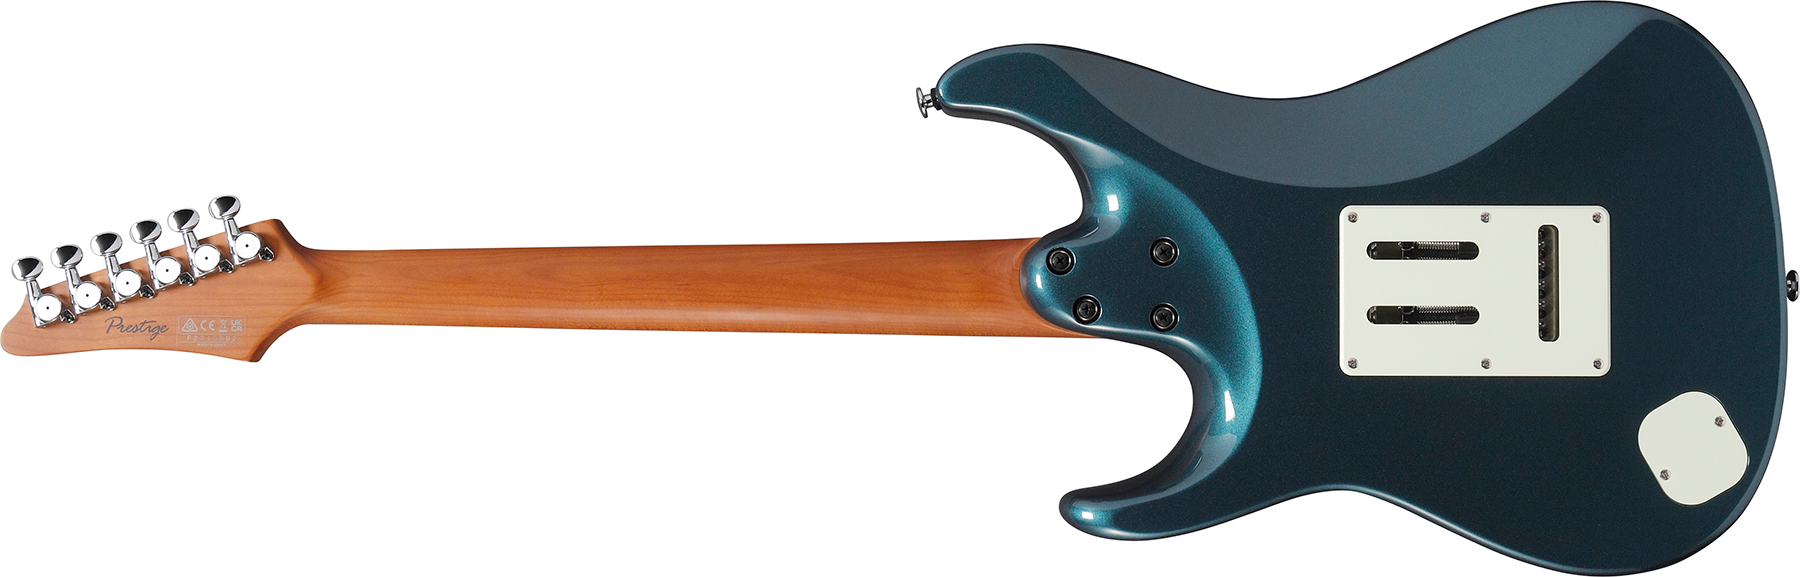 Ibanez Az2203n Atq Prestige Jap 3s Seymour Duncan Trem Rw - Antique Turquoise - Guitarra eléctrica con forma de str. - Variation 1